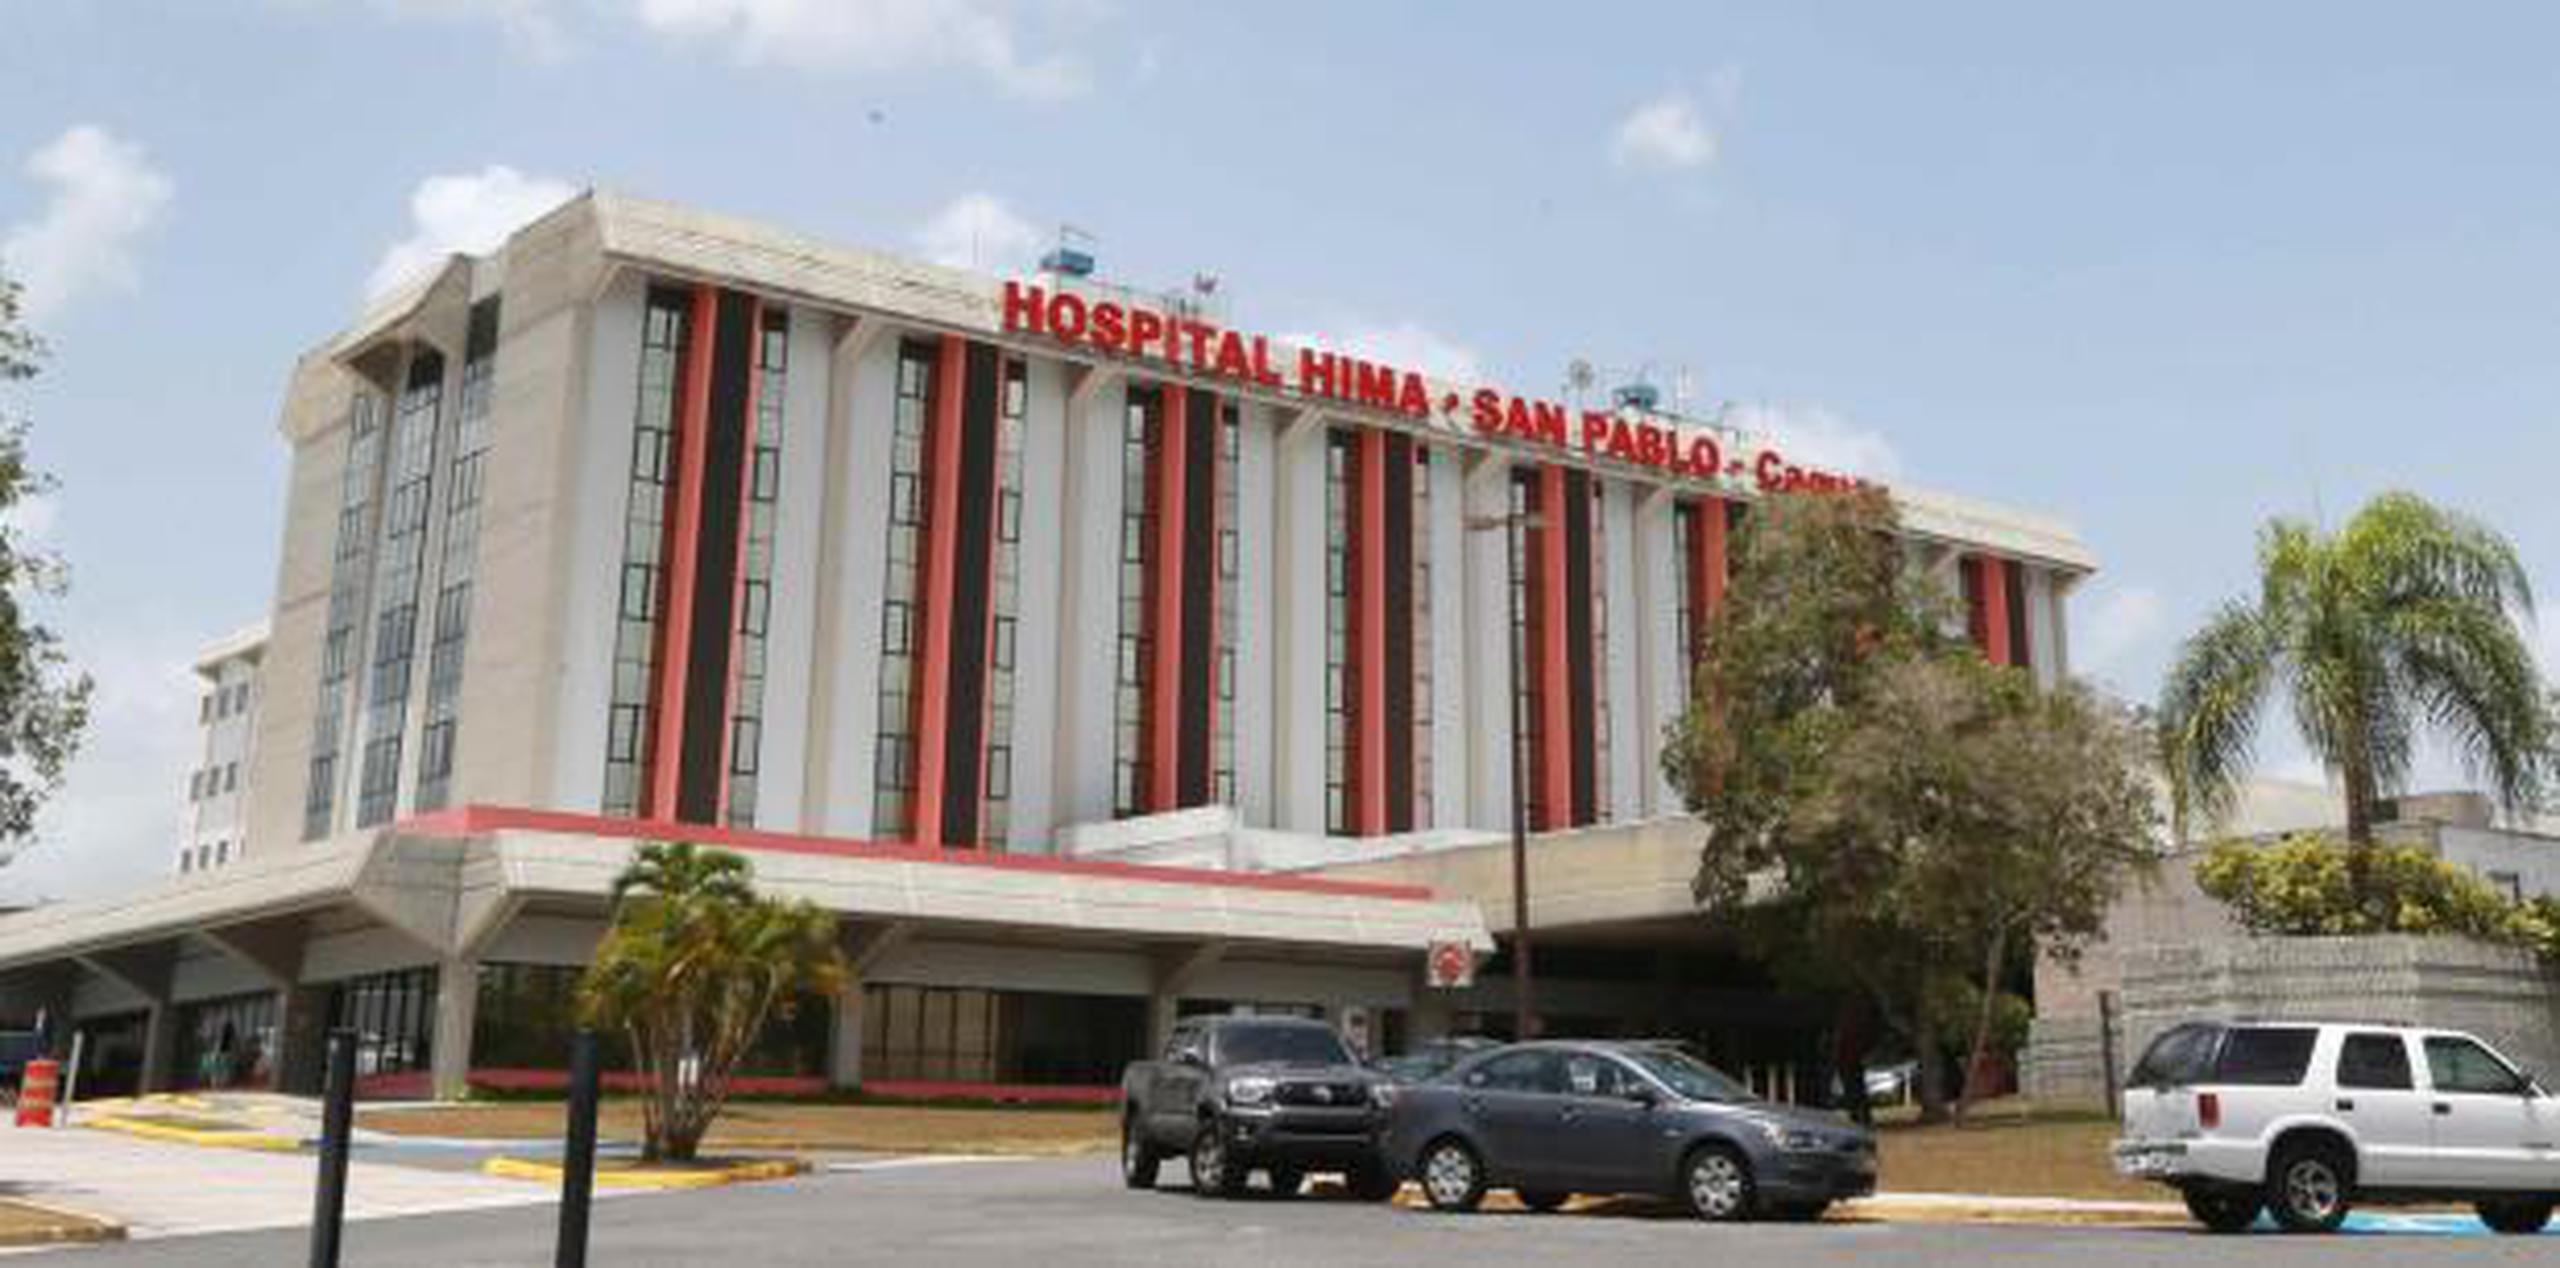 El pasado 2 de agosto un sujeto fue asesinado en el Hospital HIMA San Pablo de Caguas. (Archivo)